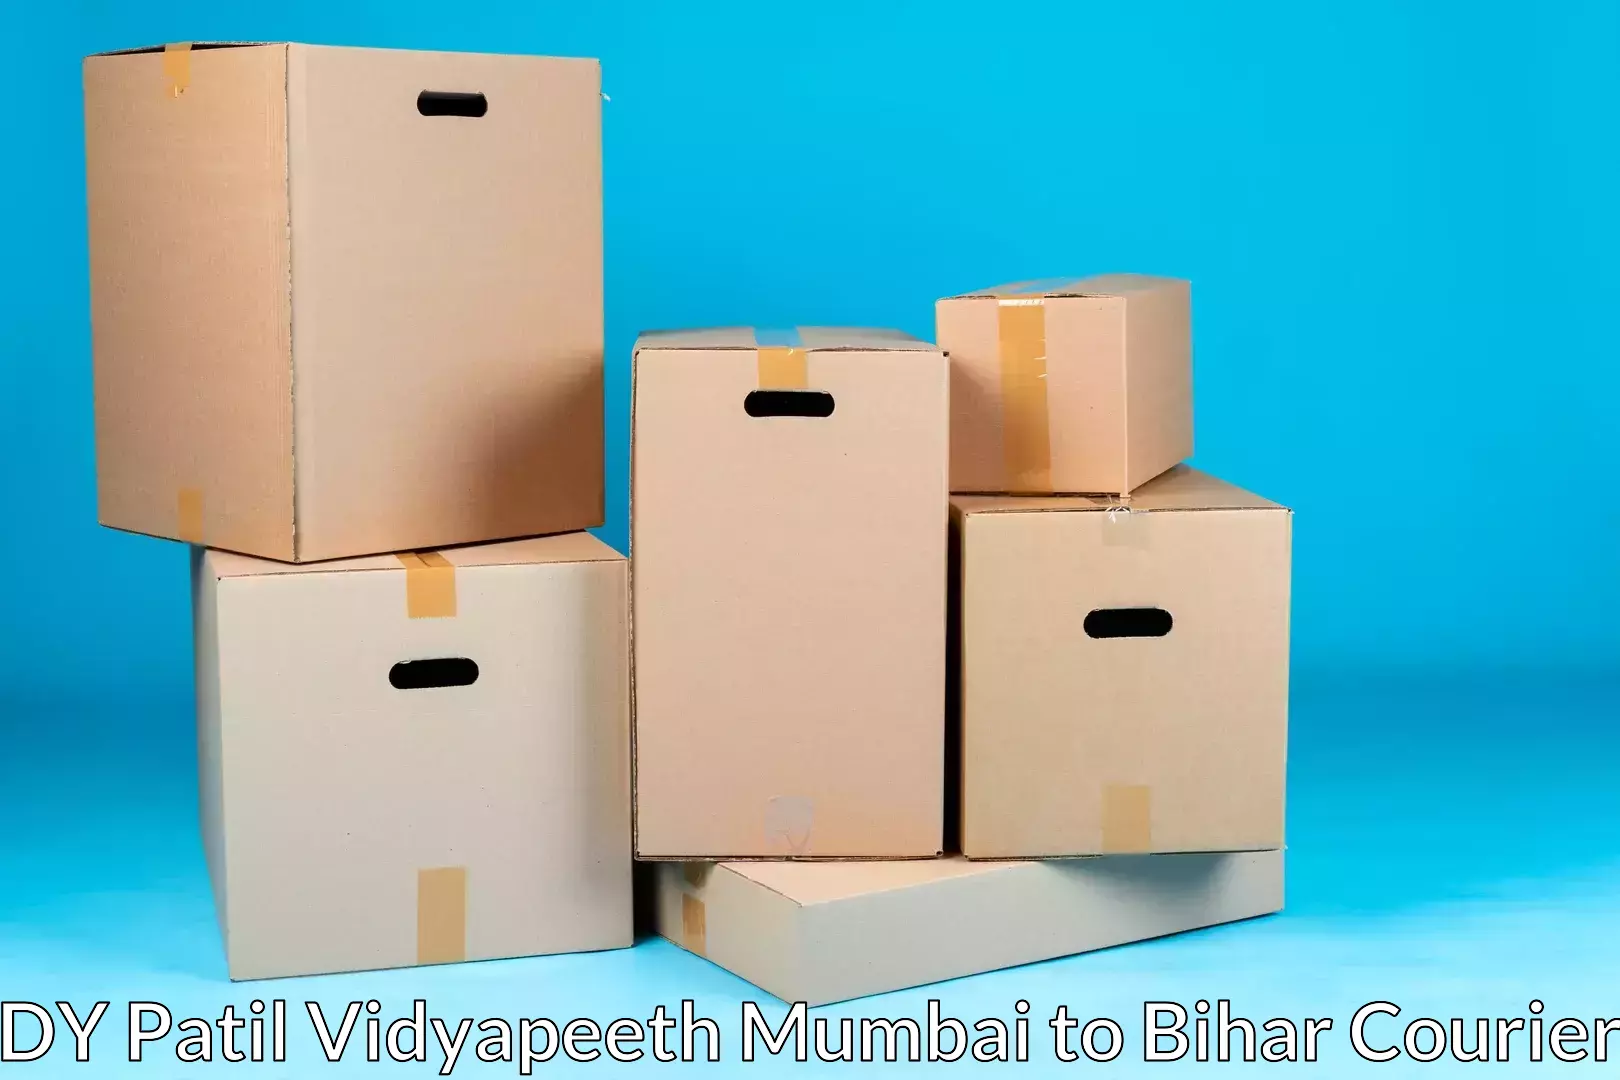 Reliable movers DY Patil Vidyapeeth Mumbai to Murliganj